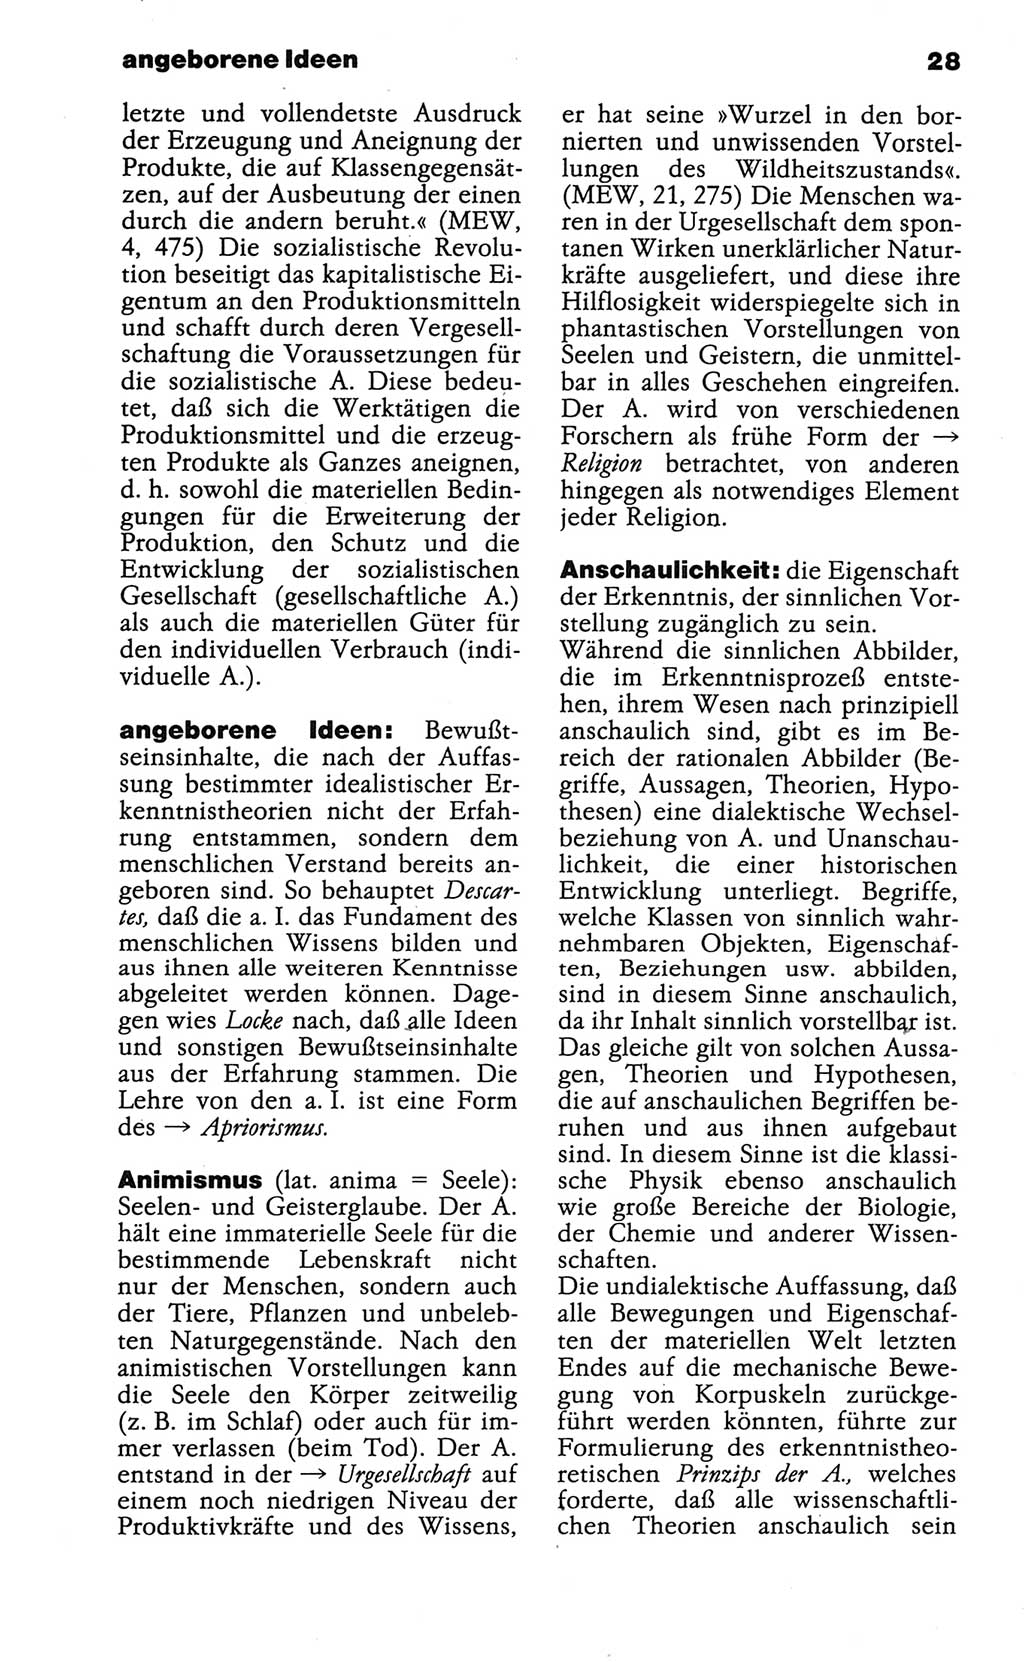 Wörterbuch der marxistisch-leninistischen Philosophie [Deutsche Demokratische Republik (DDR)] 1986, Seite 28 (Wb. ML Phil. DDR 1986, S. 28)